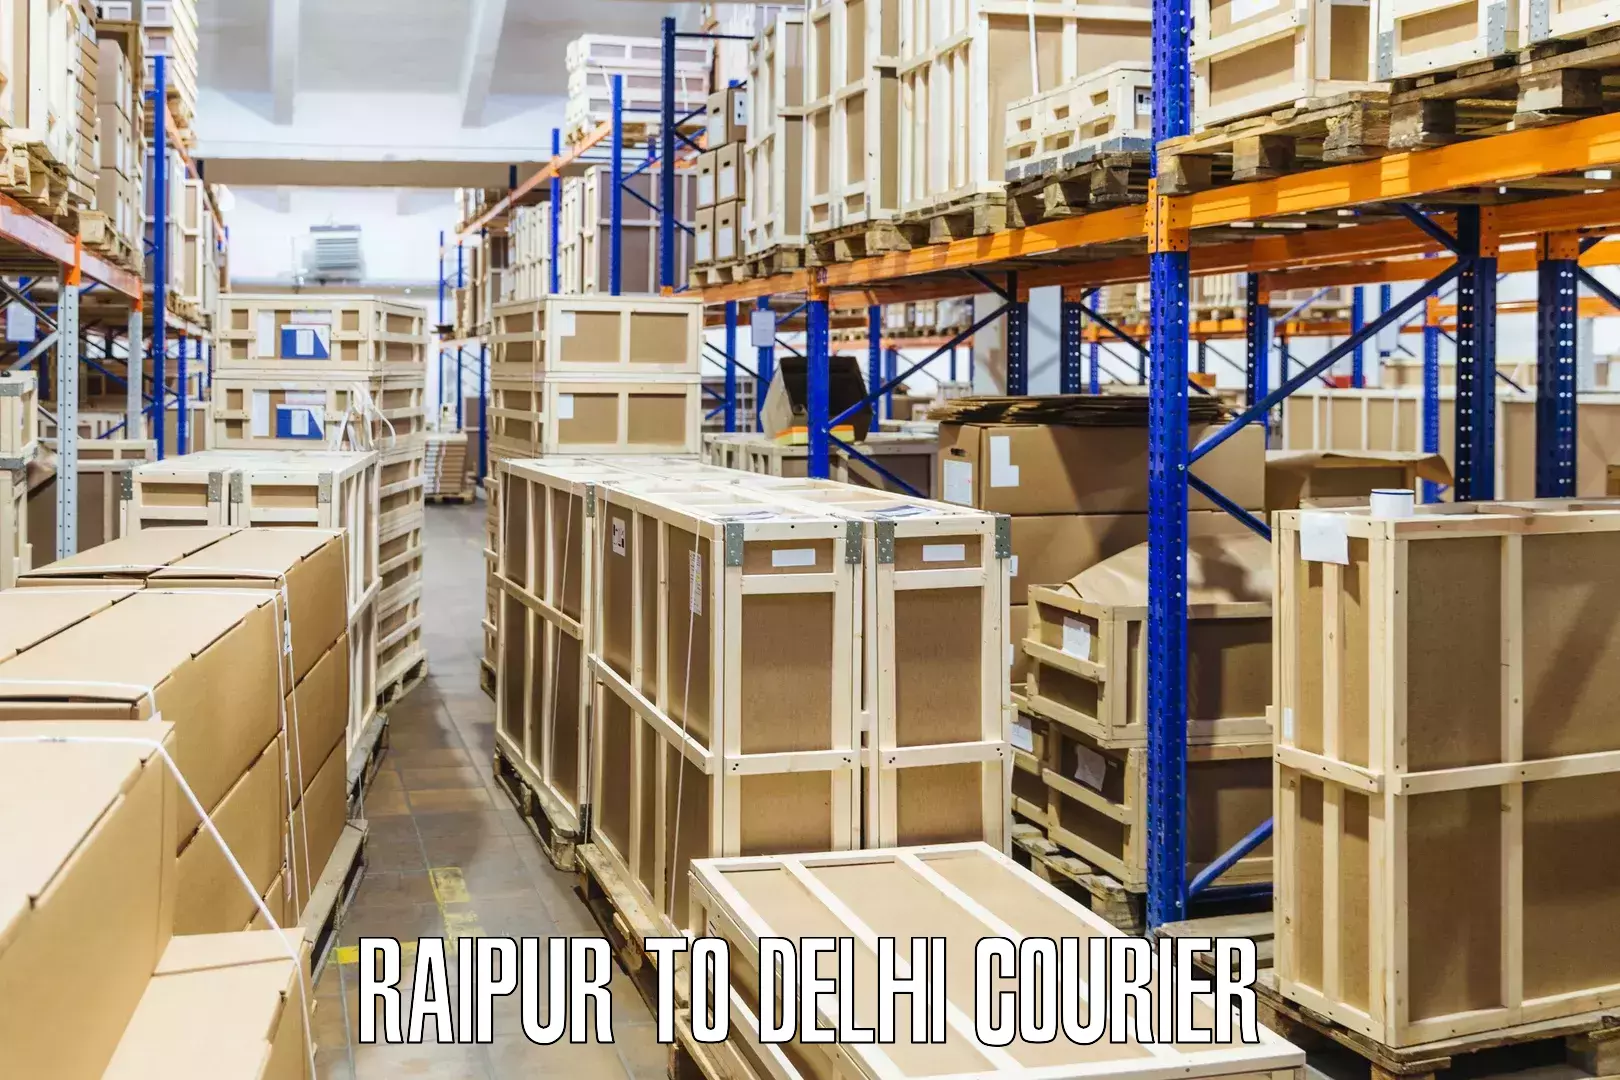 Courier services Raipur to Jamia Millia Islamia New Delhi